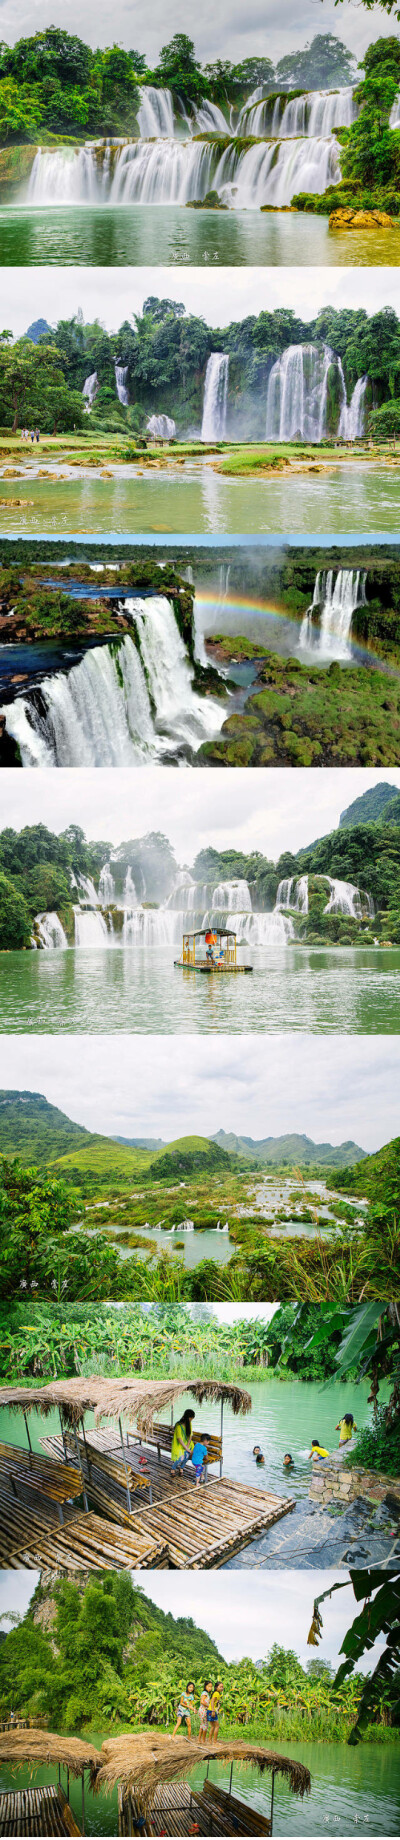 这里的德天瀑布是亚洲第一大跨国瀑布,也是花千骨取景拍摄地之一